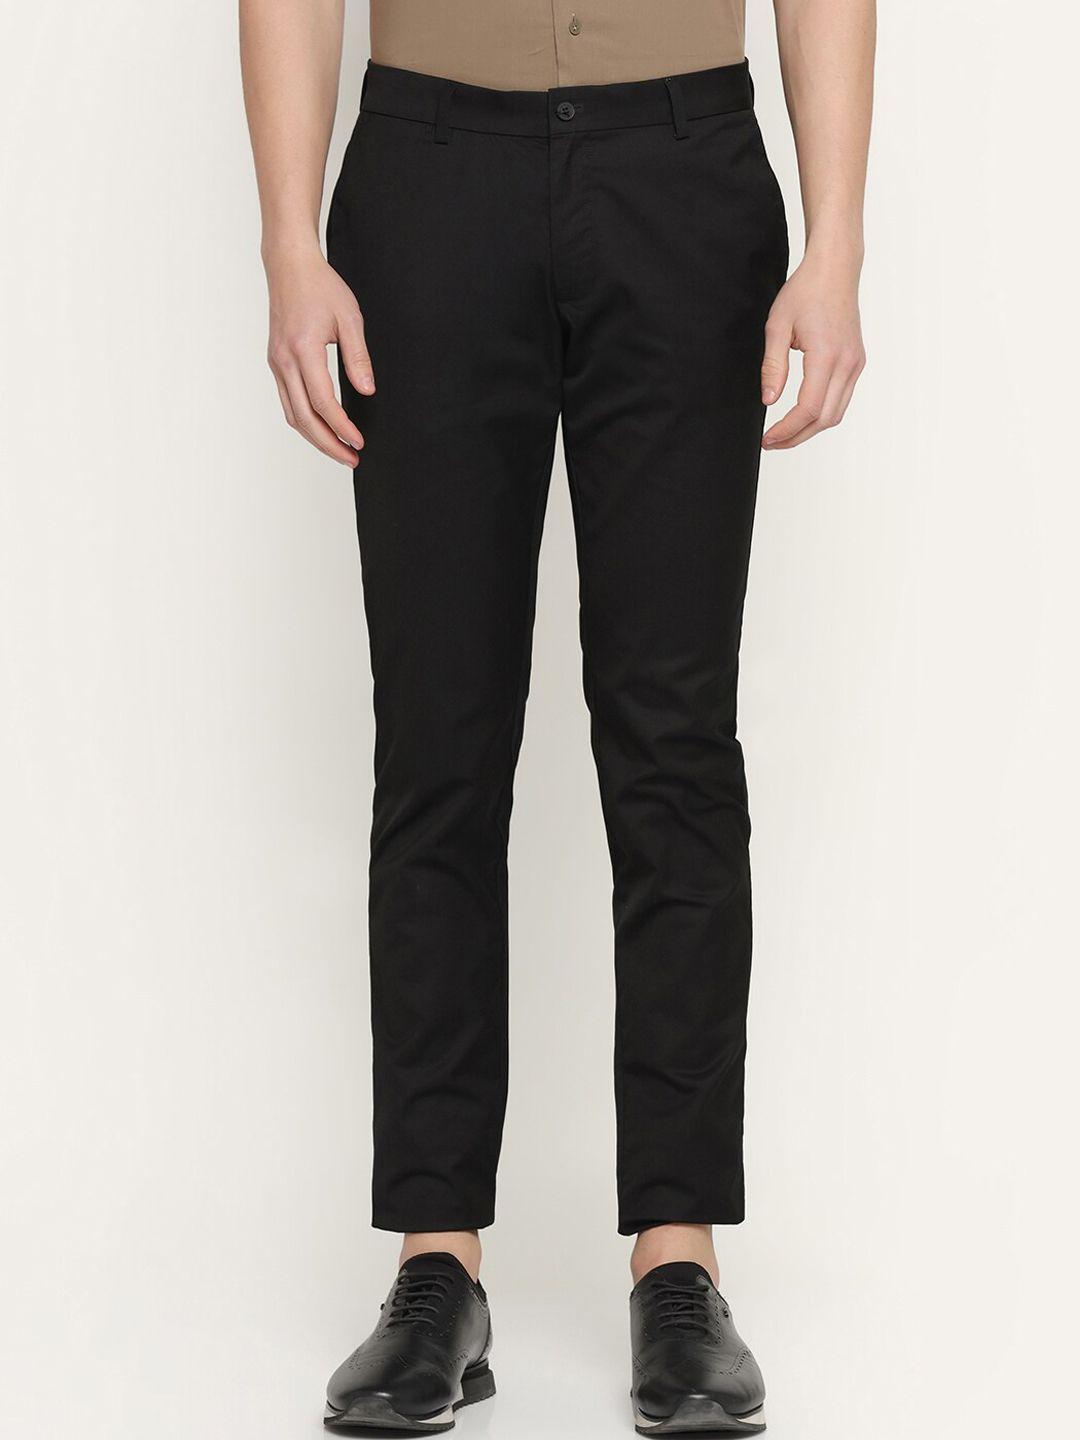 blackberrys-men-slim-fit-trousers